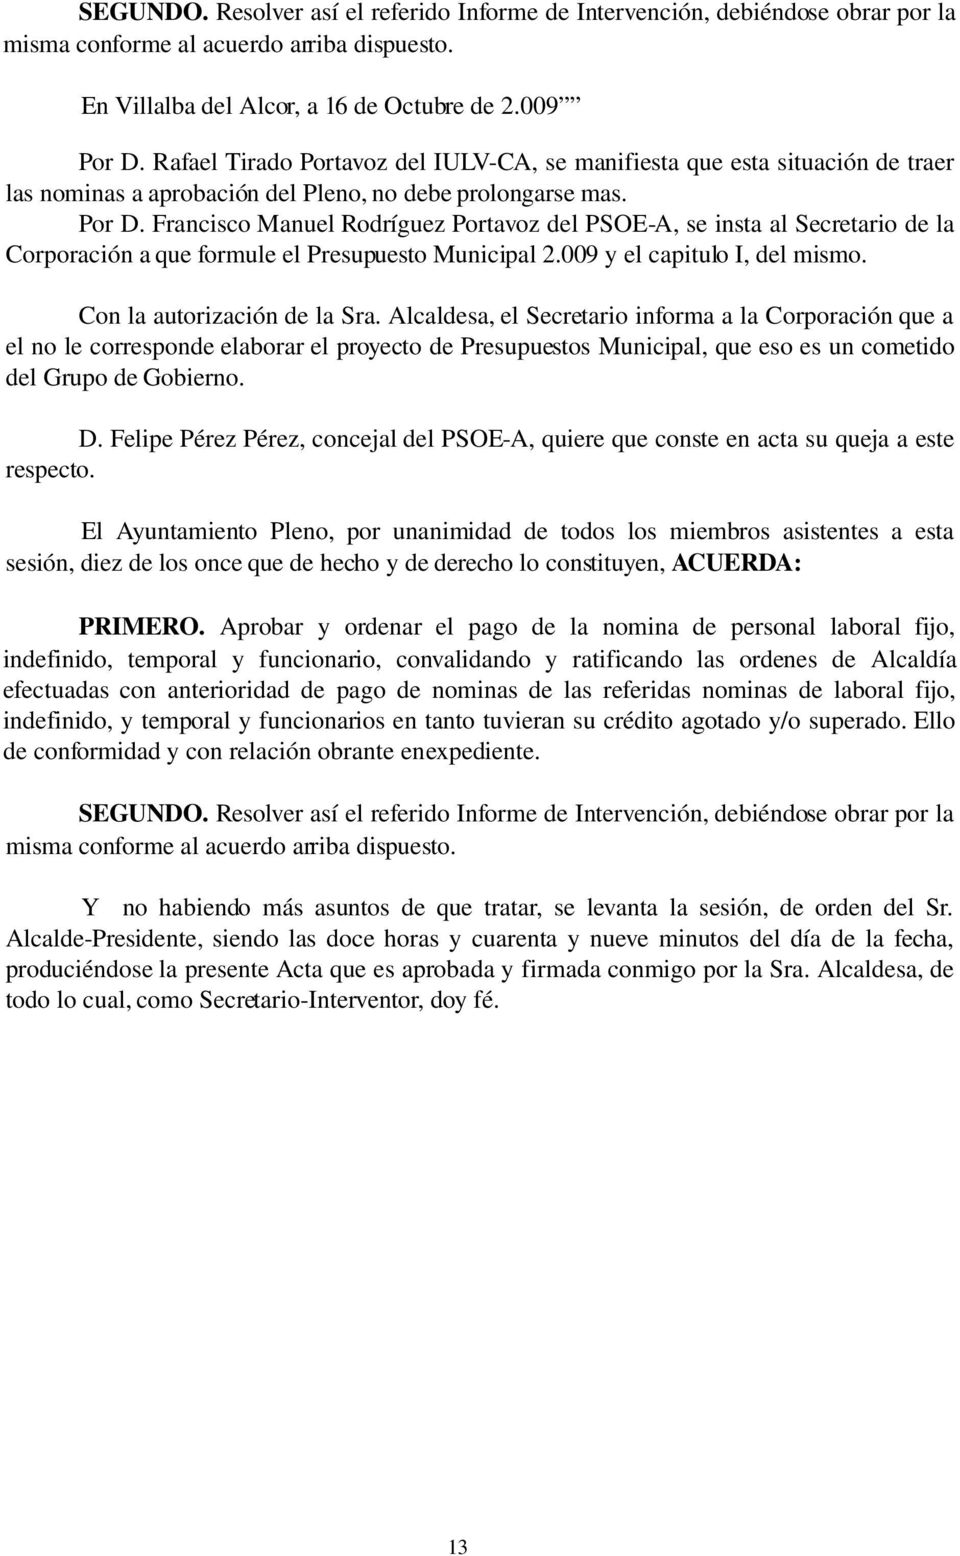 Francisco Manuel Rodríguez Portavoz del PSOE A, se insta al Secretario de la Corporación a que formule el Presupuesto Municipal 2.009 y el capitulo I, del mismo. Con la autorización de la Sra.